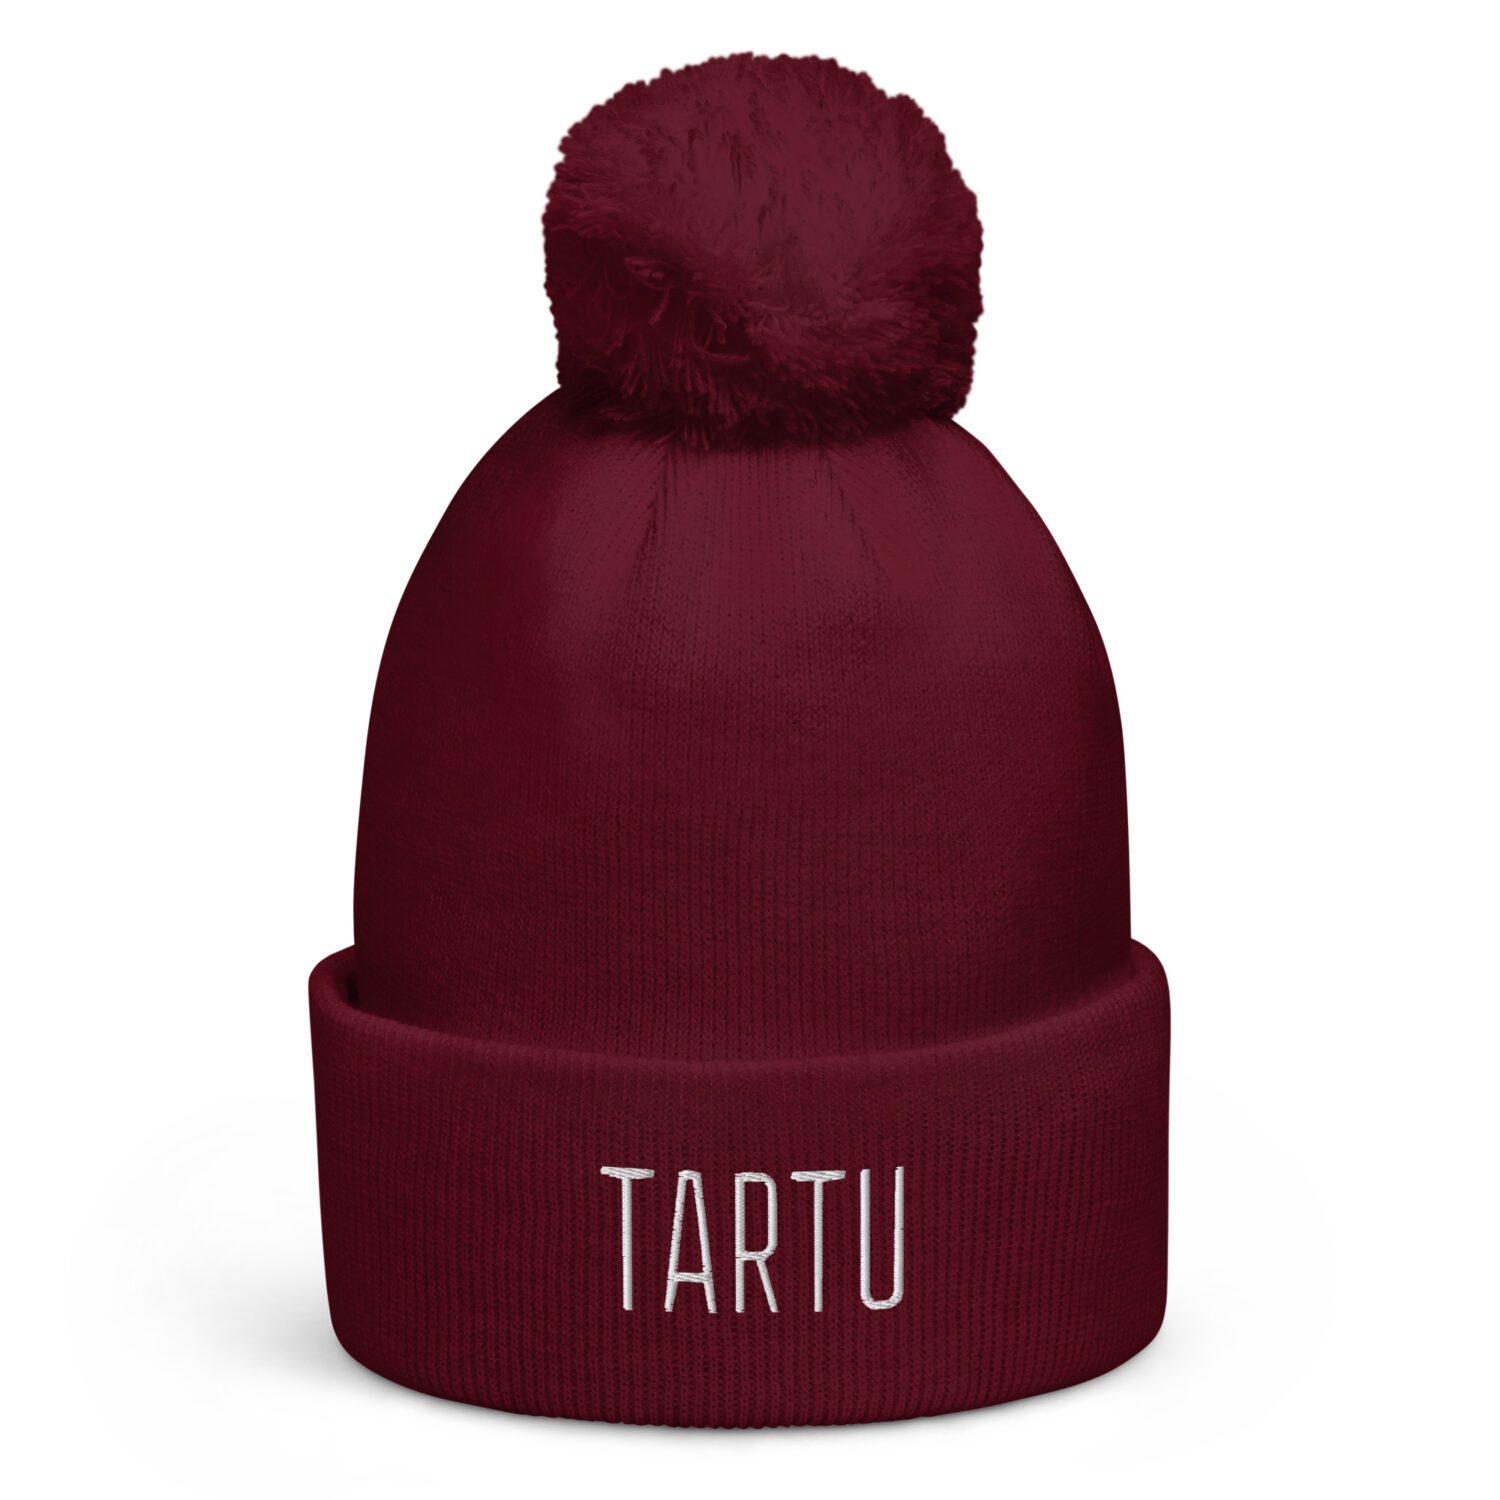 Tutiga müts ‘Tartu’